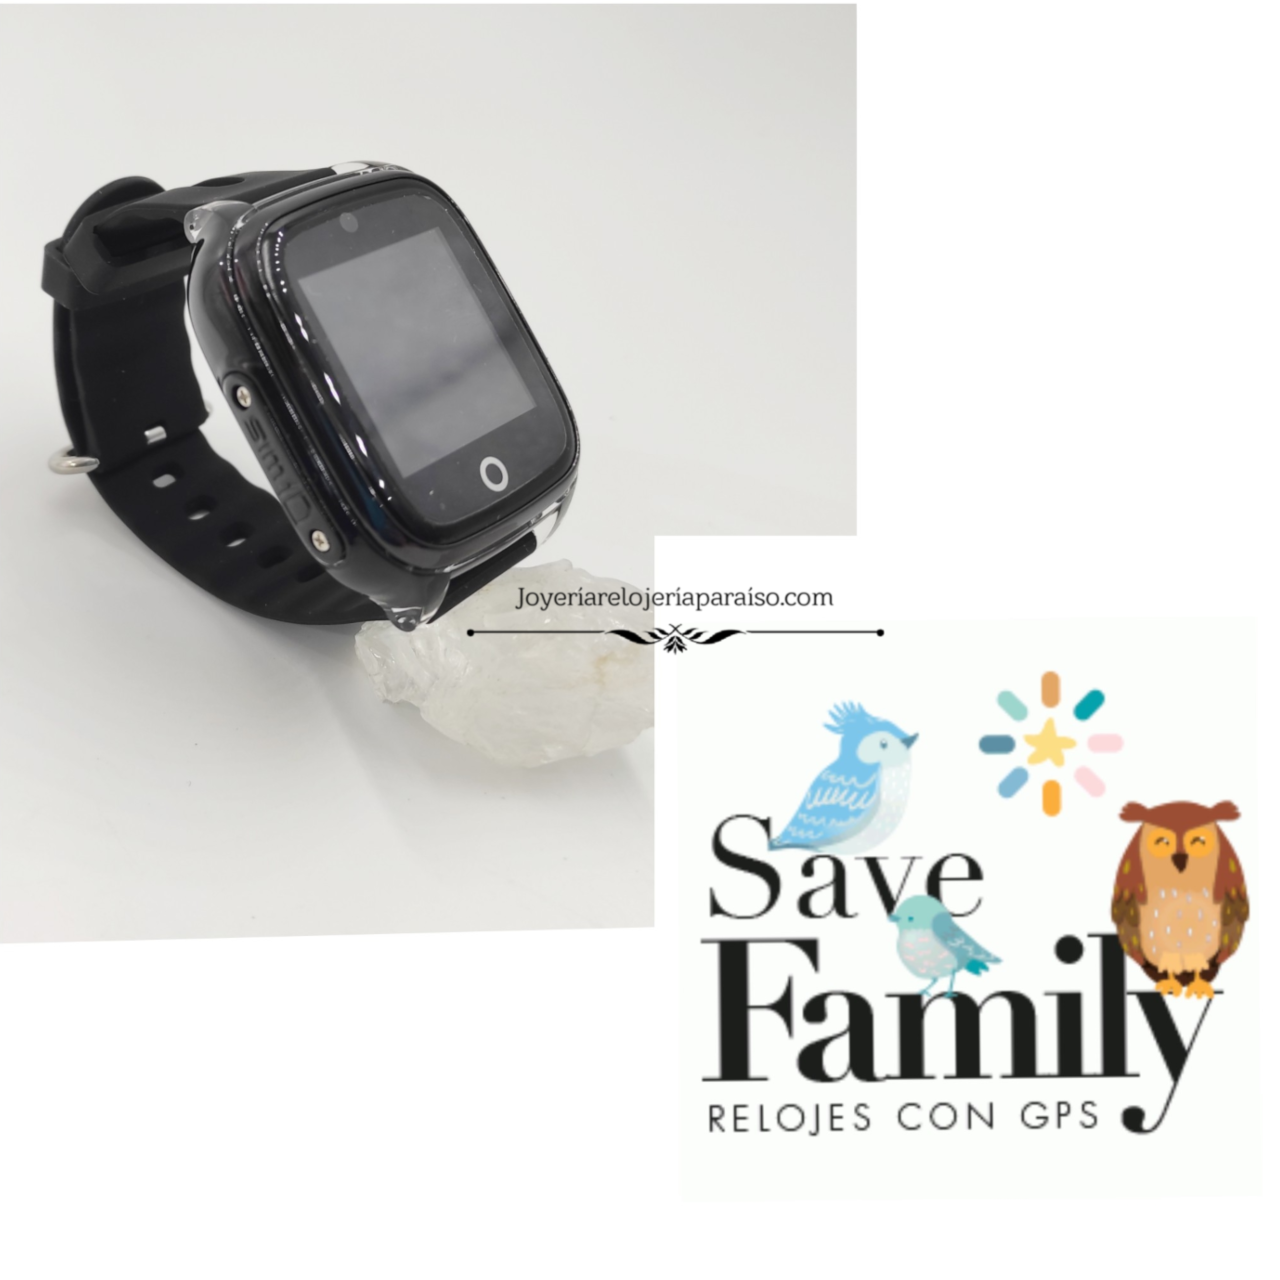 Save Family Reloj Niños Offers Shop